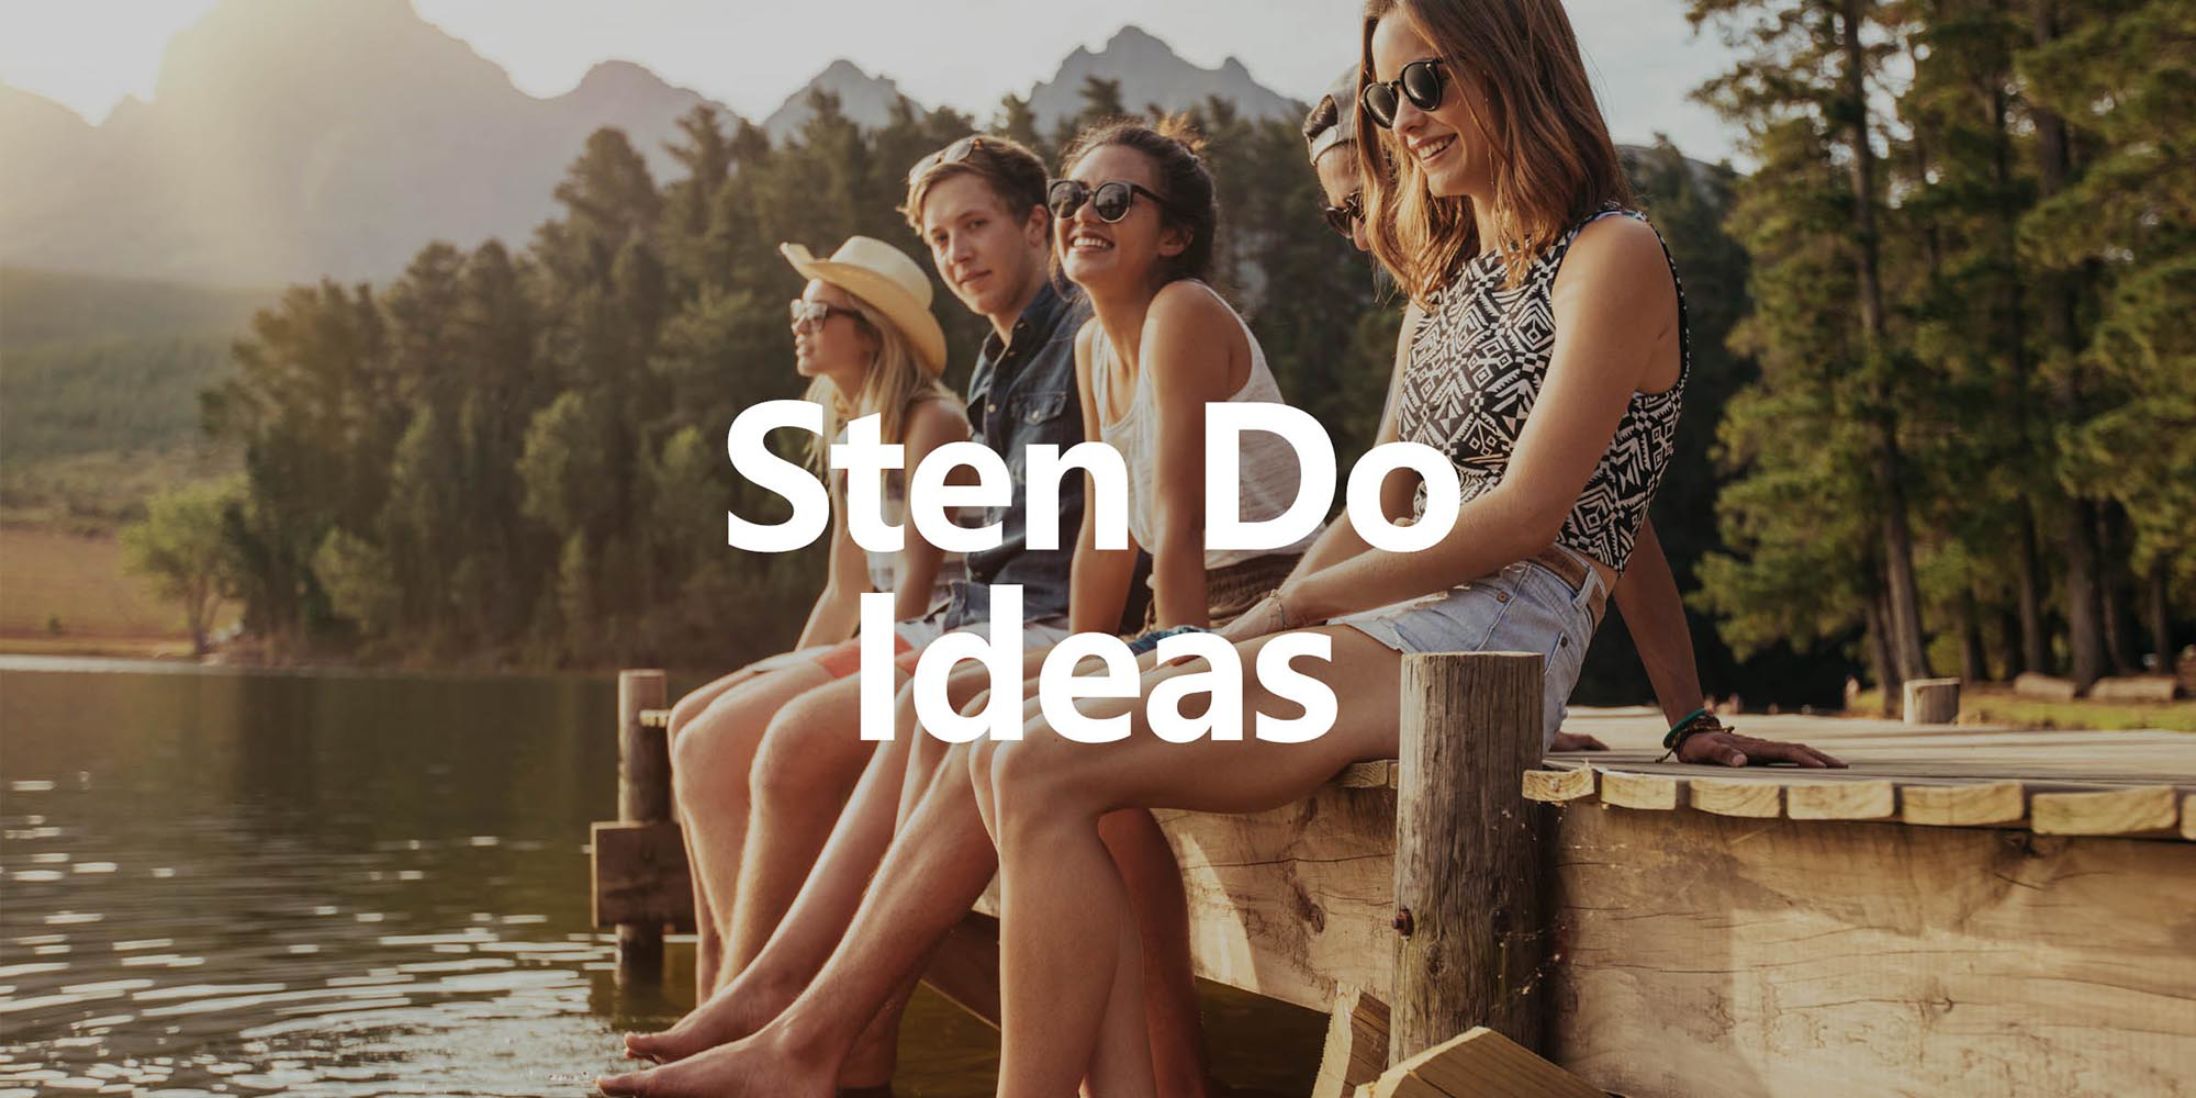 Sten Do Ideas